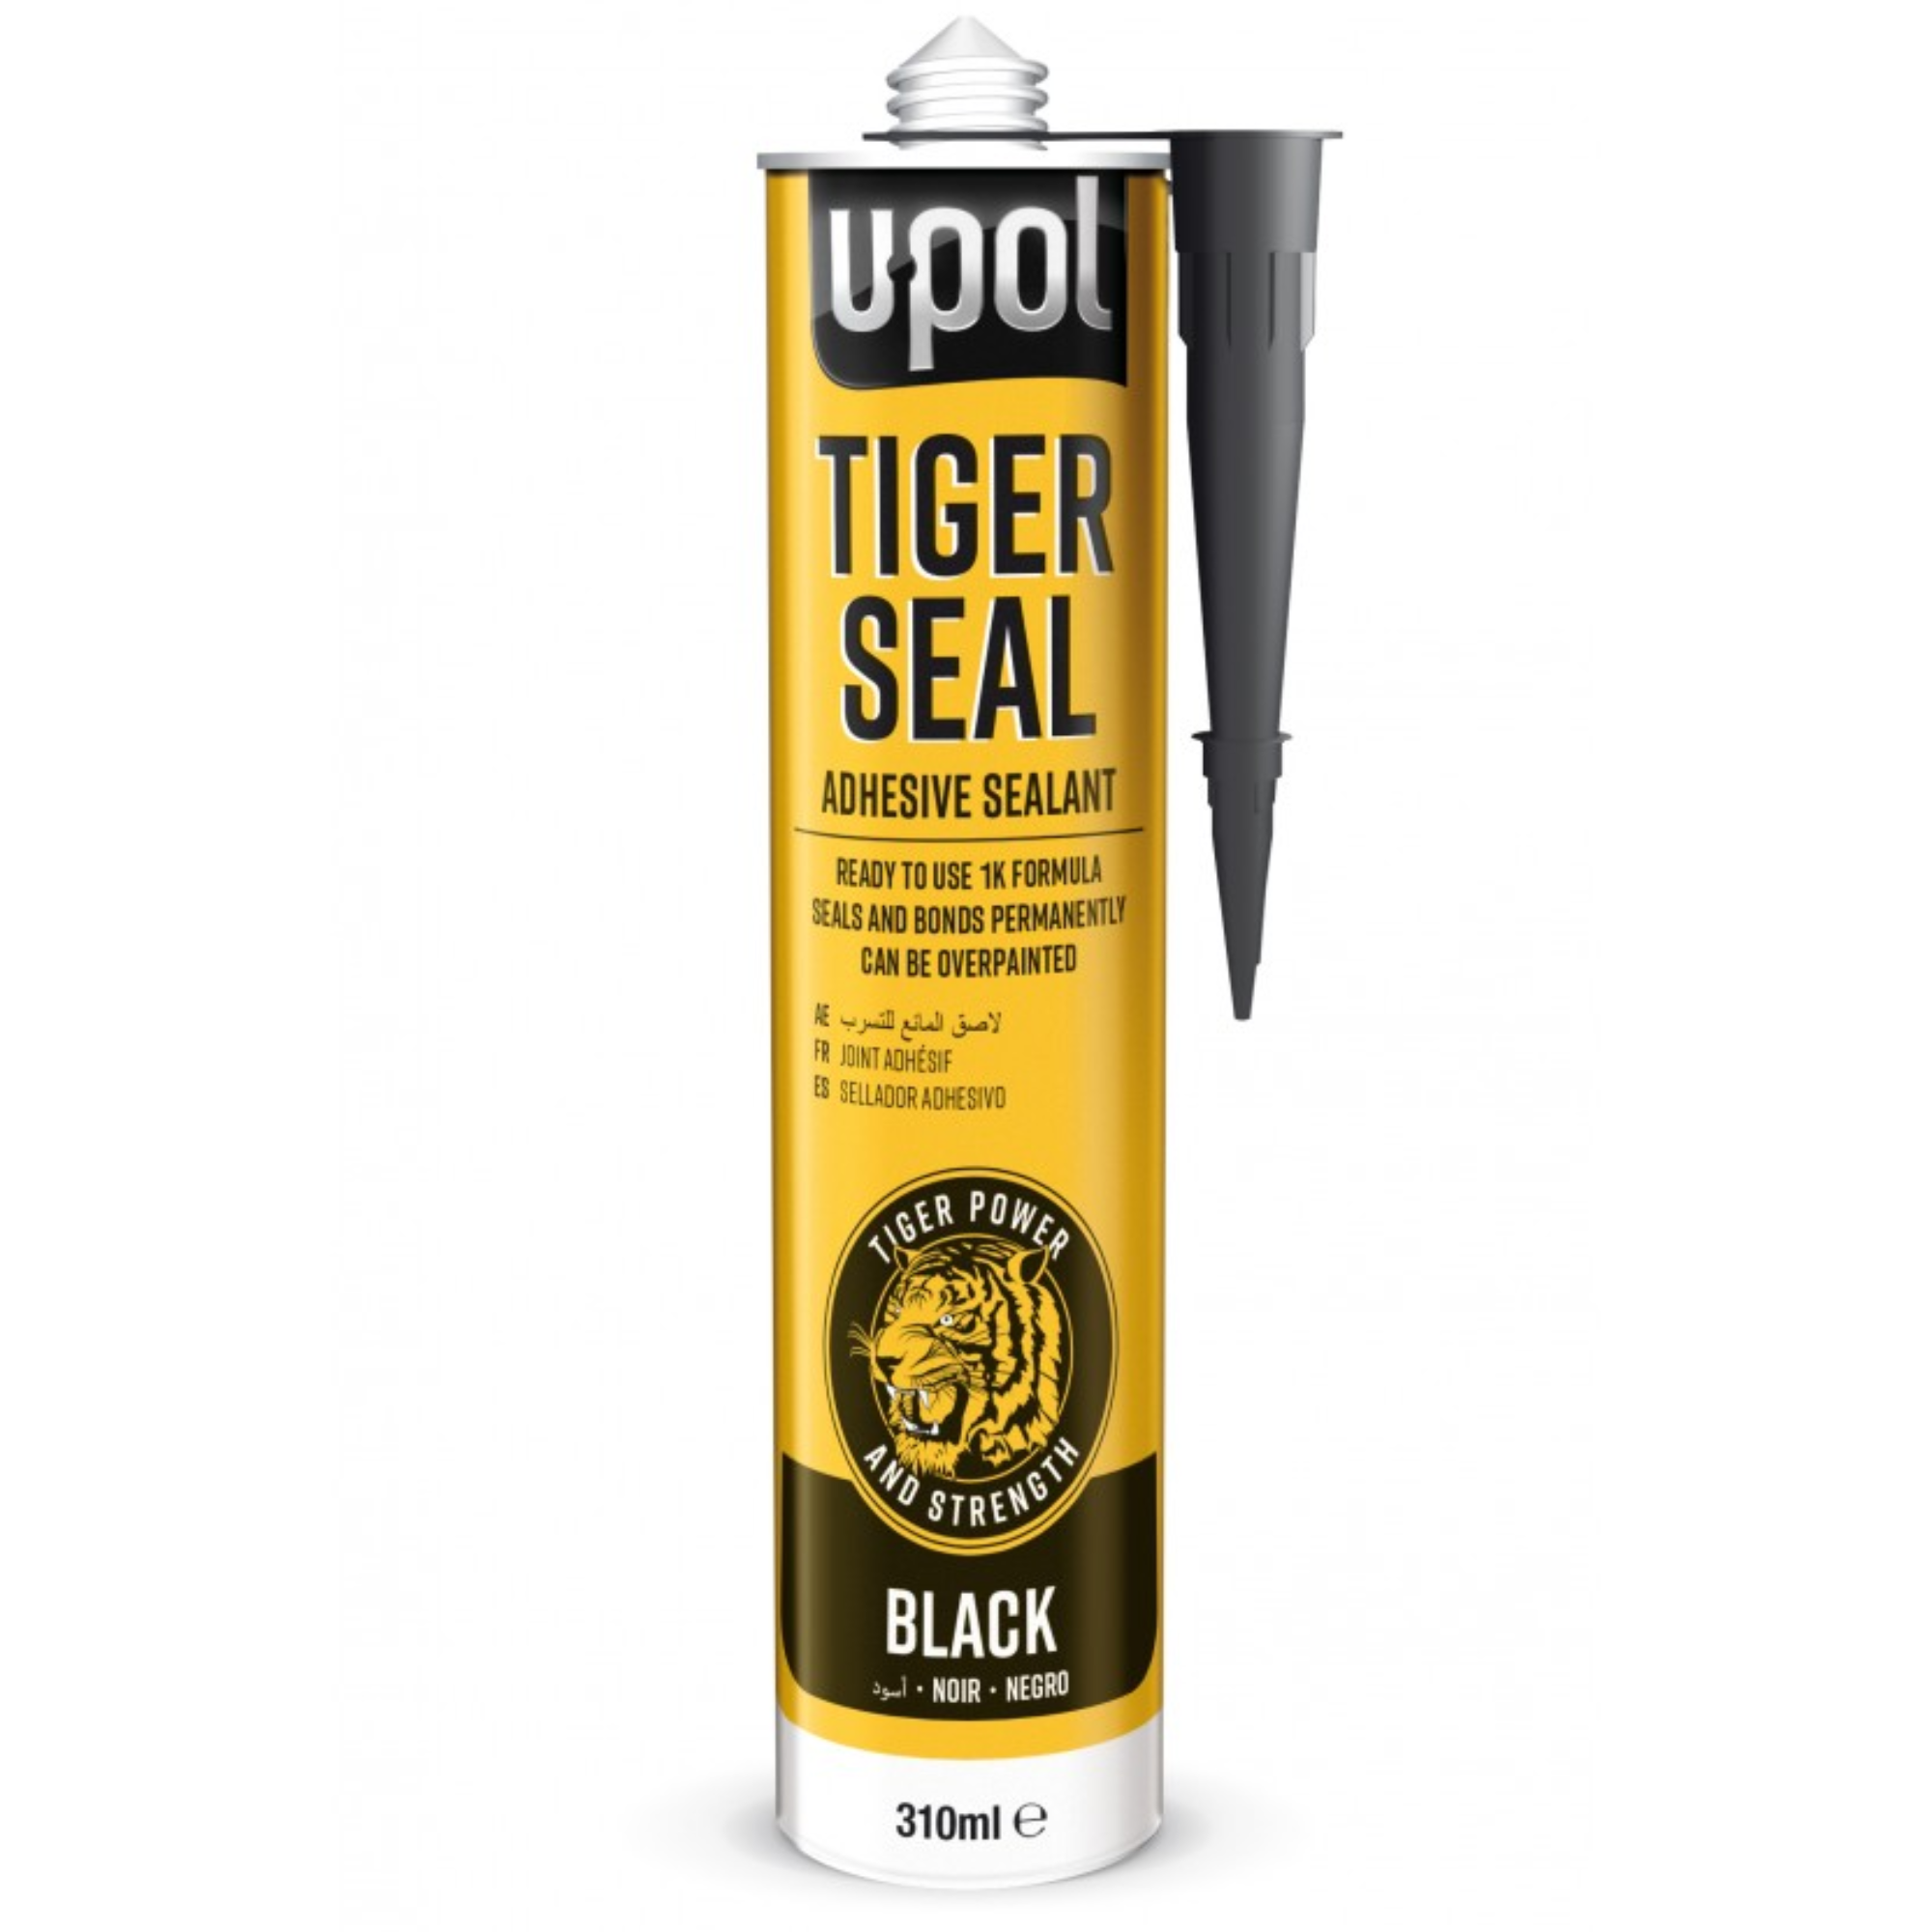 Upol Black Tiger Seal Adhesive Sealant 310ml